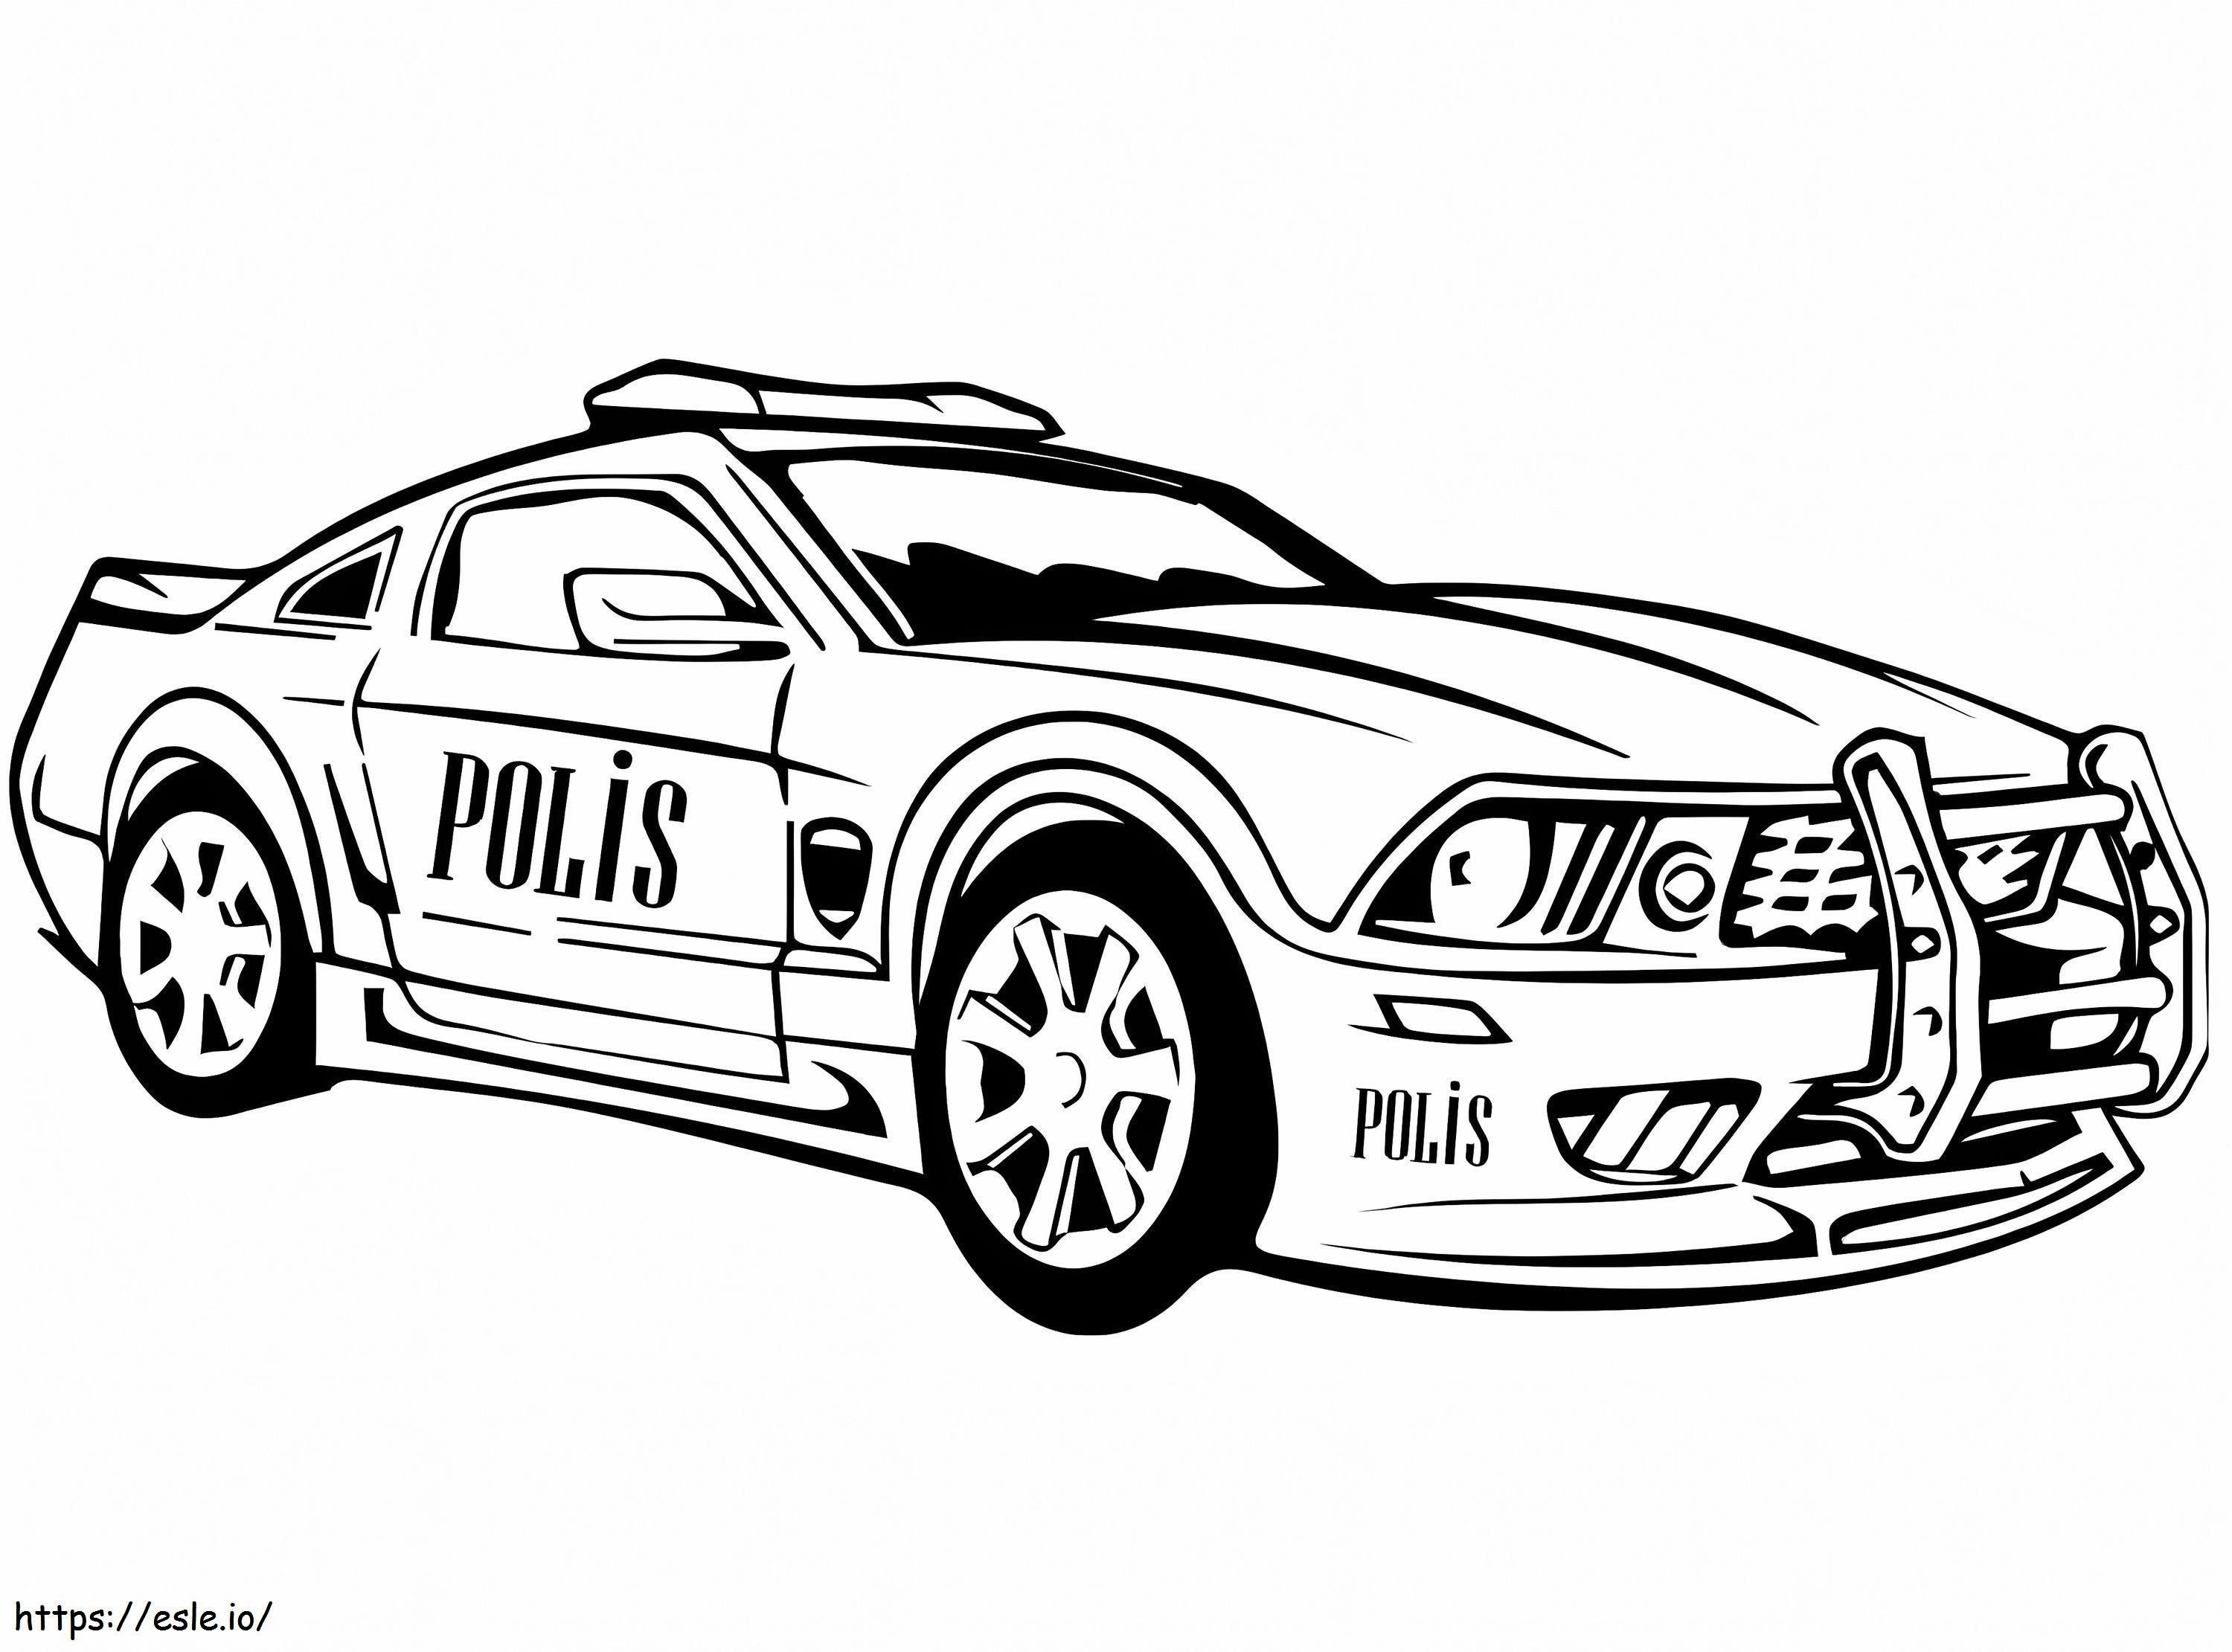 Carro de polícia 12 para colorir